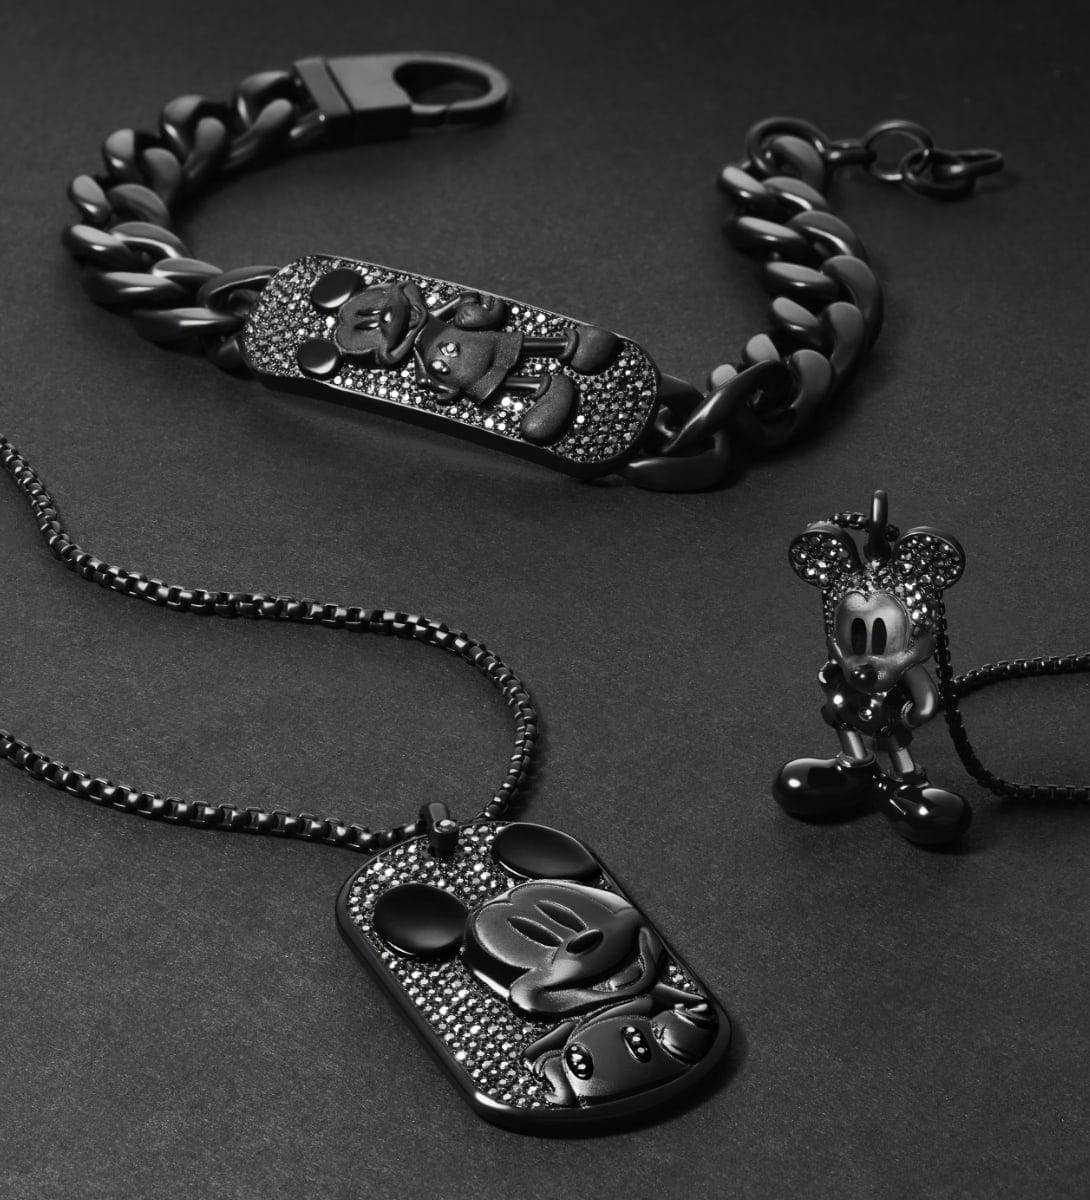 Tre gioielli di Topolino total black, ciascuno tempestato di cristalli di ematite. Un bracciale a catena con piastrina, una collana con piastrina e una collana con pendente a statuetta sono disposti in modo artistico su uno sfondo nero.